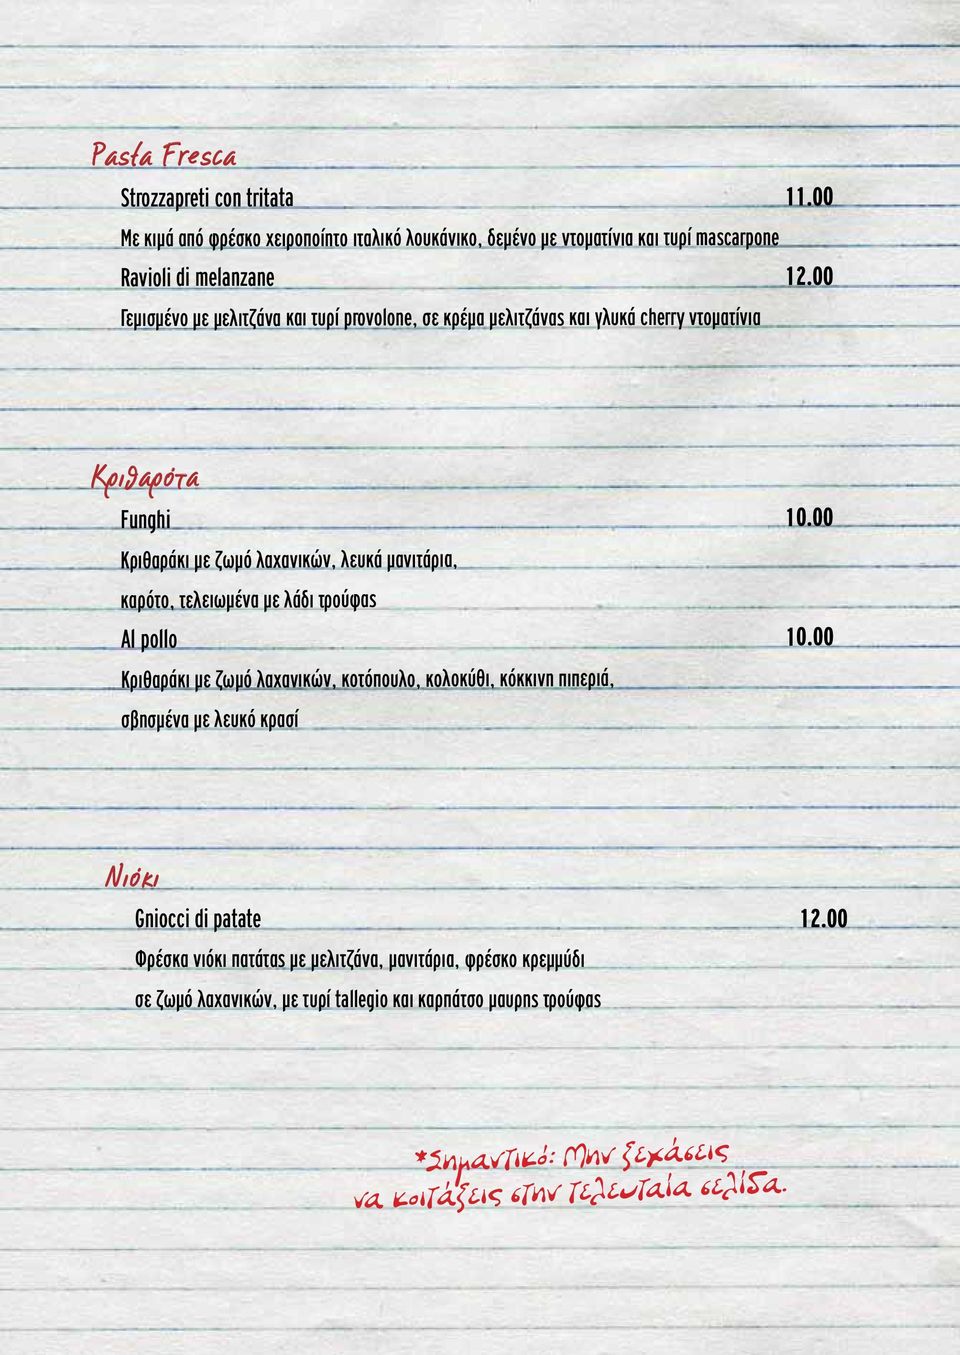 00 Κριθαράκι με ζωμό λαχανικών, λευκά μανιτάρια, καρότο, τελειωμένα με λάδι τρούφας Αl pollo 10.